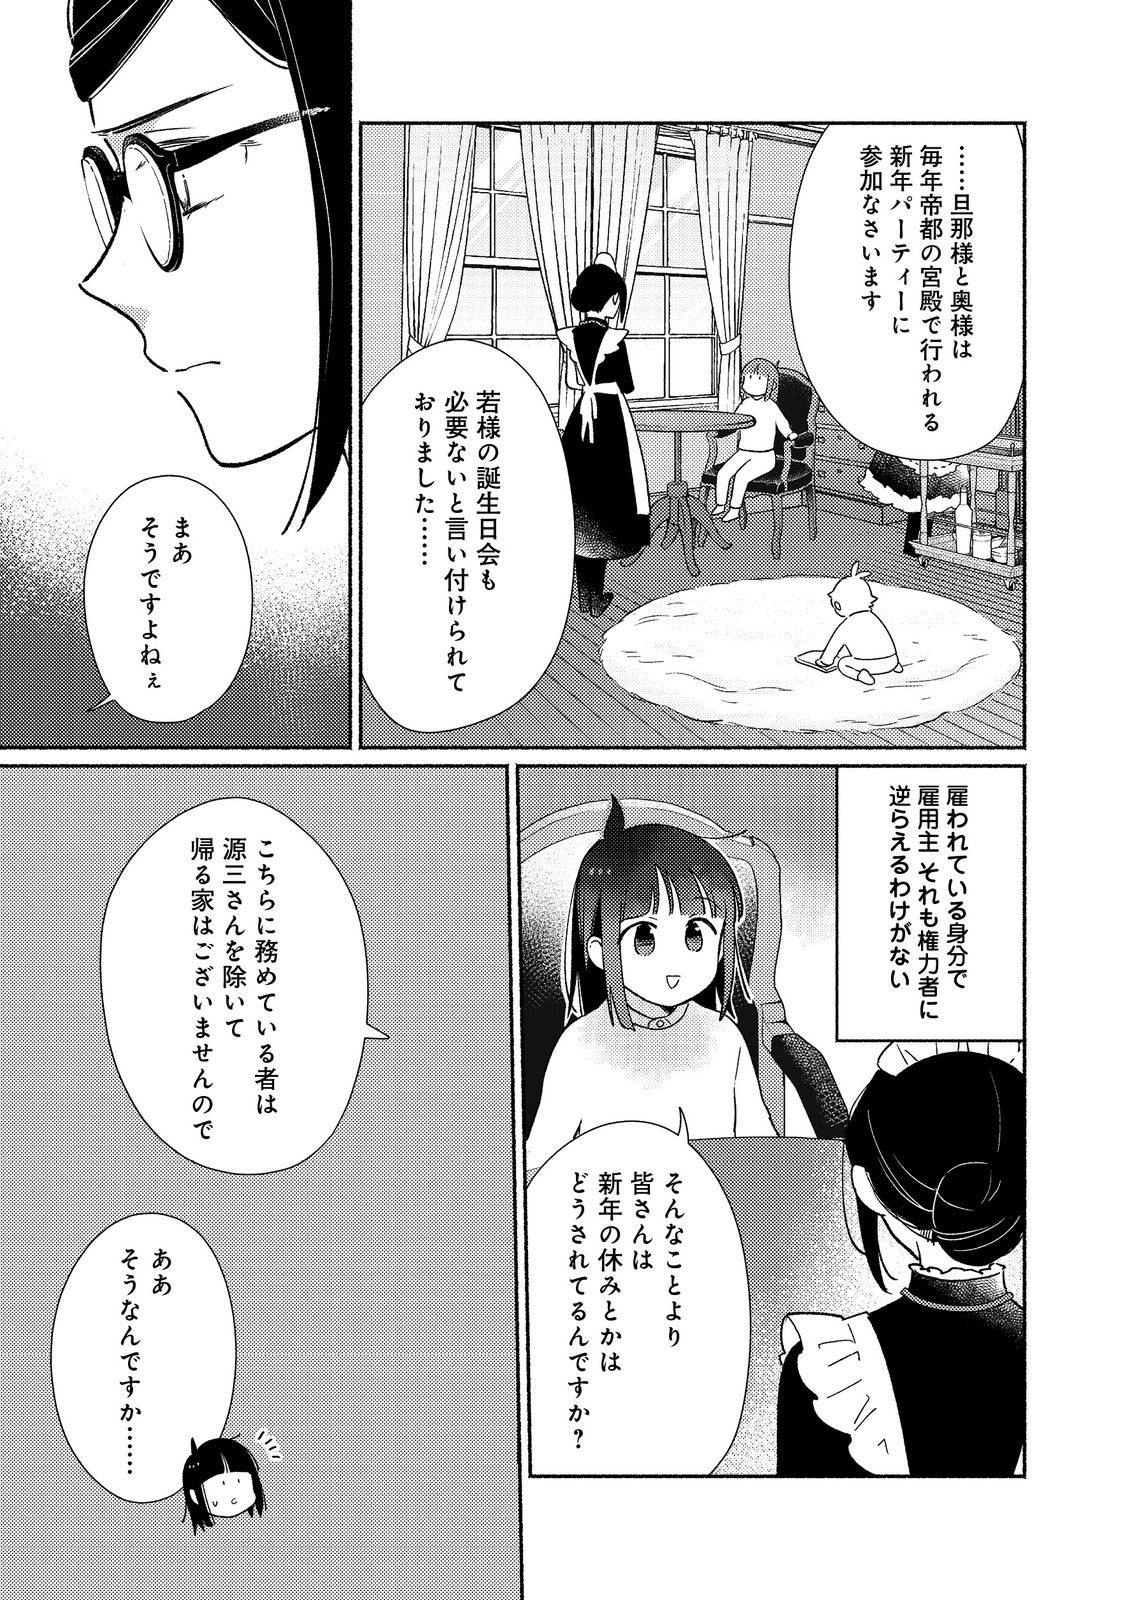 Shirobuta Kizoku desu ga Zense no Kioku ga Haeta node Hiyoko na Otouto Sodatemasu - Chapter 24.1 - Page 3